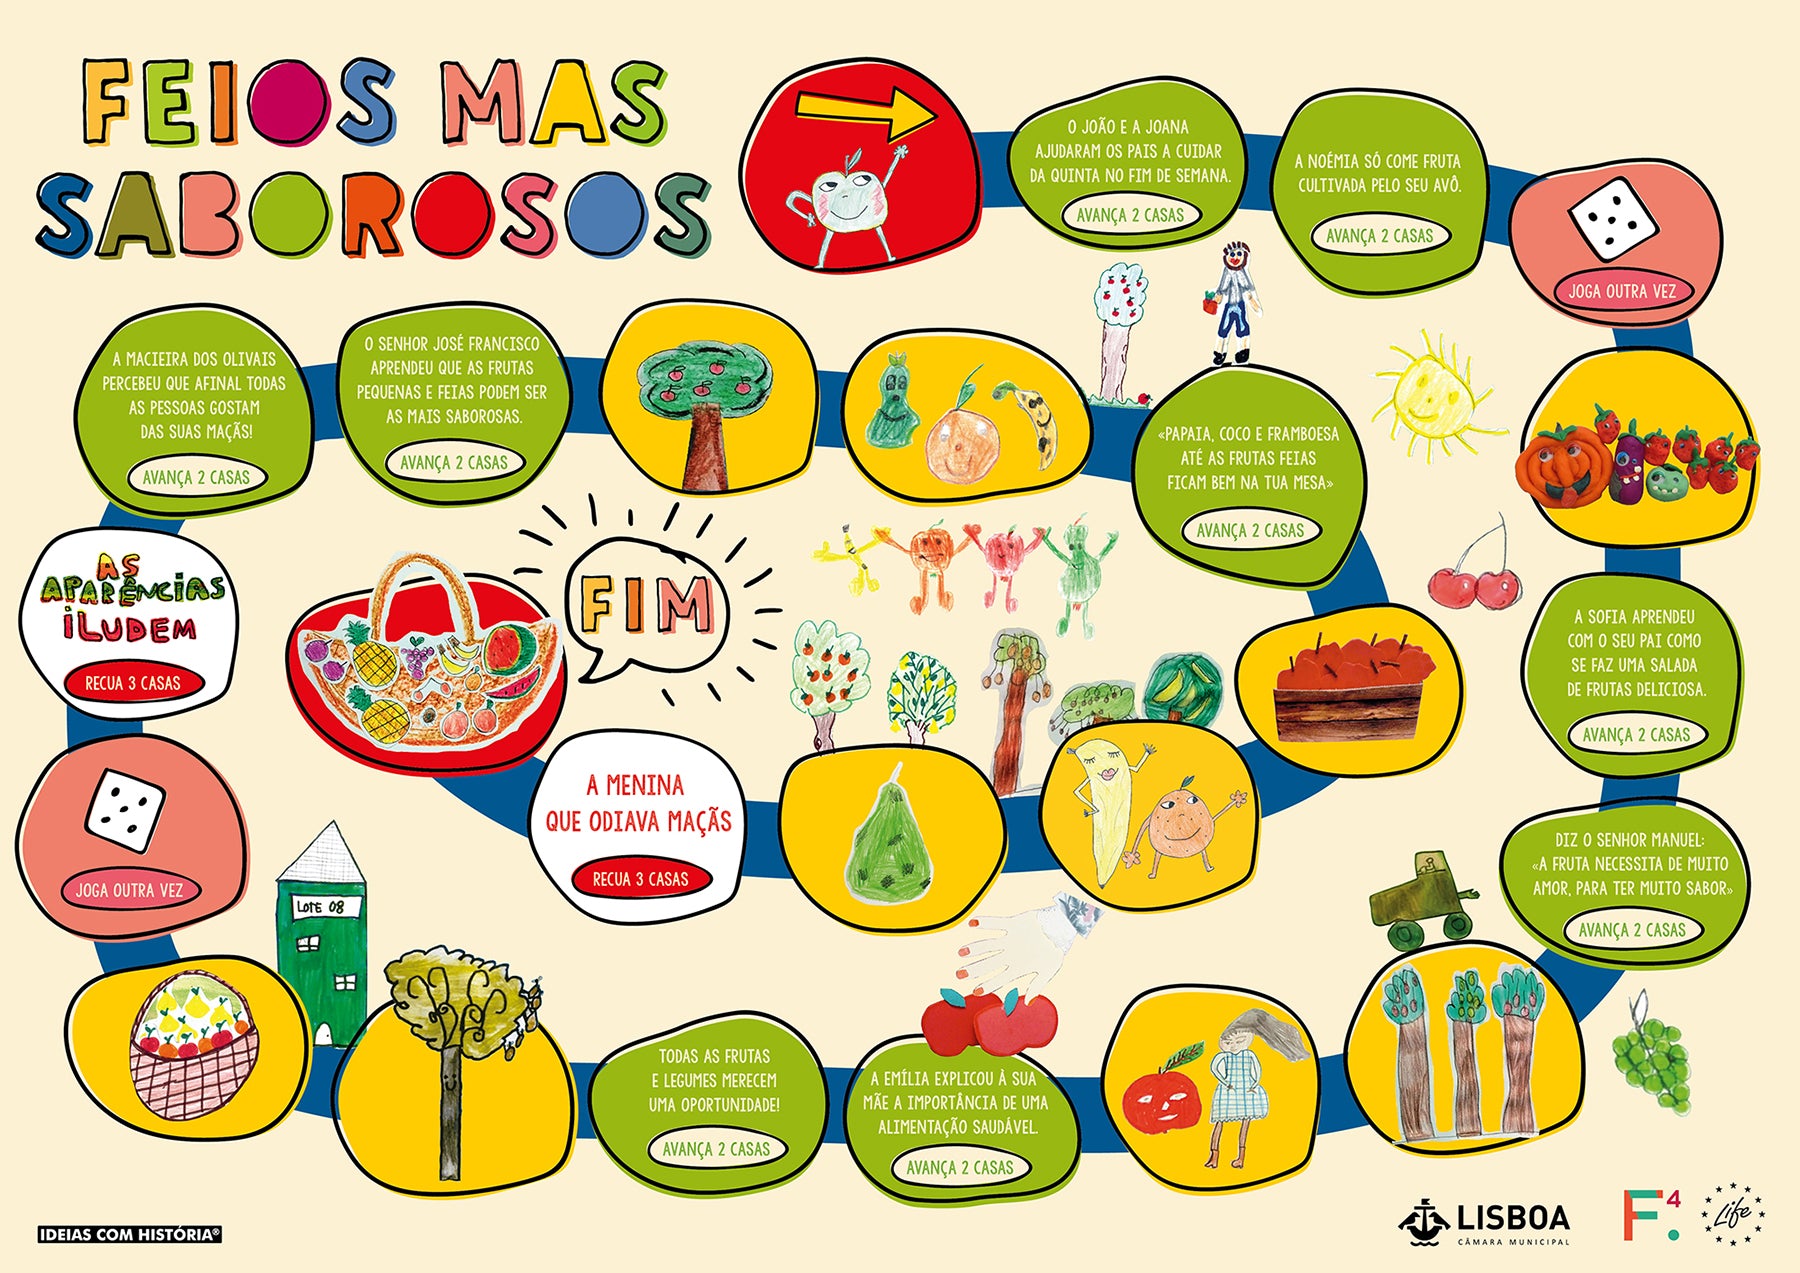 Jogos de tabuleiro portugueses sobre Portugal: actividades para fazer em  casa, Megafone